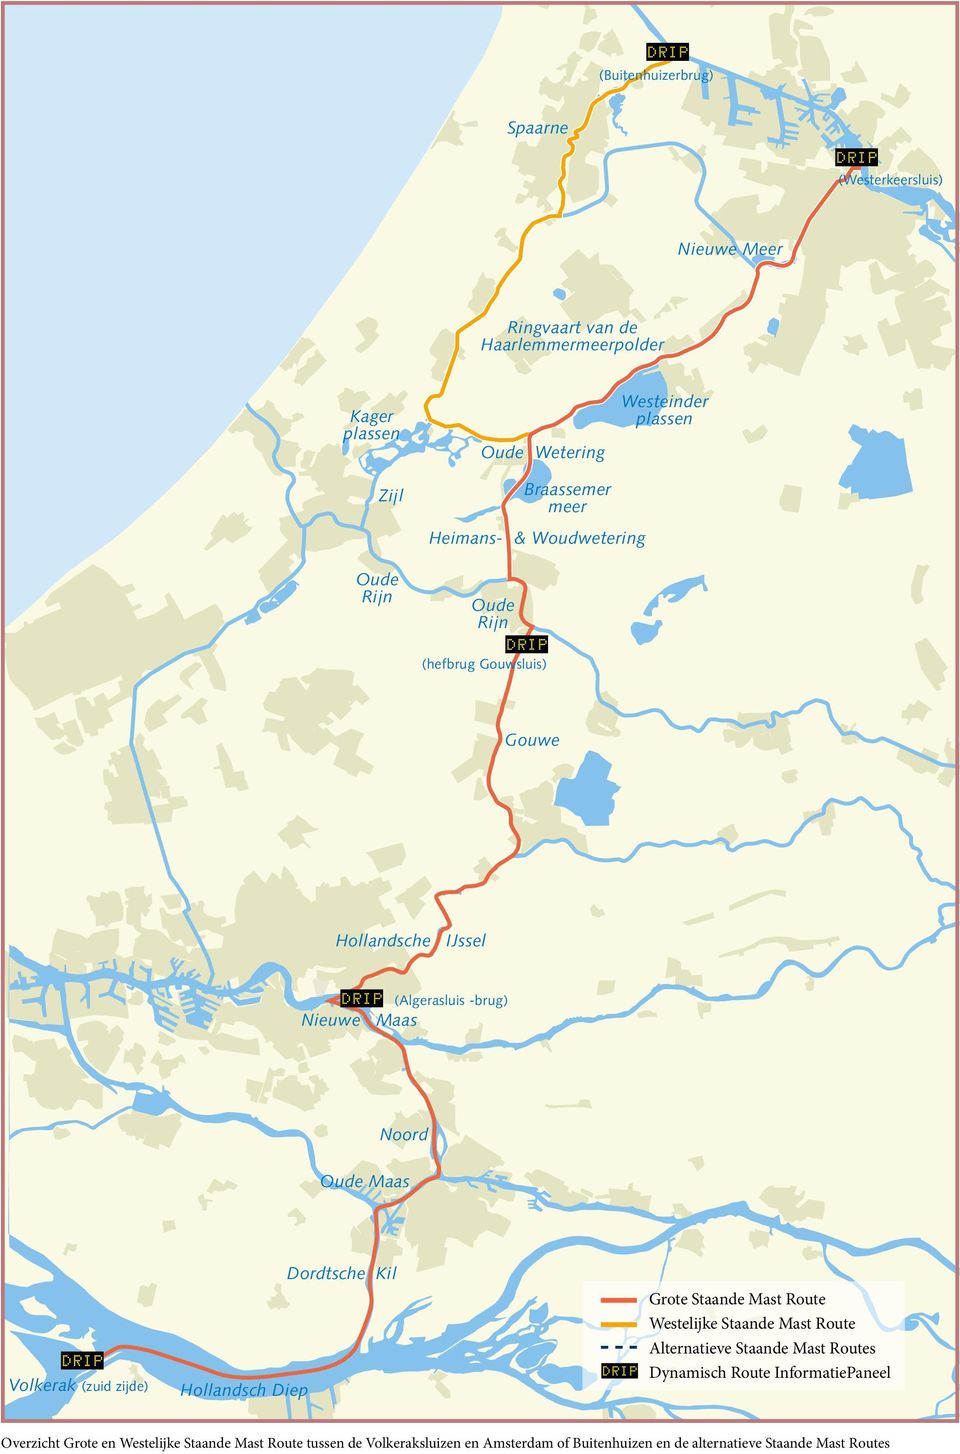 Volkerak (zuid zijde) Hollandsch Diep Dordtsche Kil Grote Staande Mast Route Westelijke Staande Mast Route Alternatieve Staande Mast Routes Dynamisch